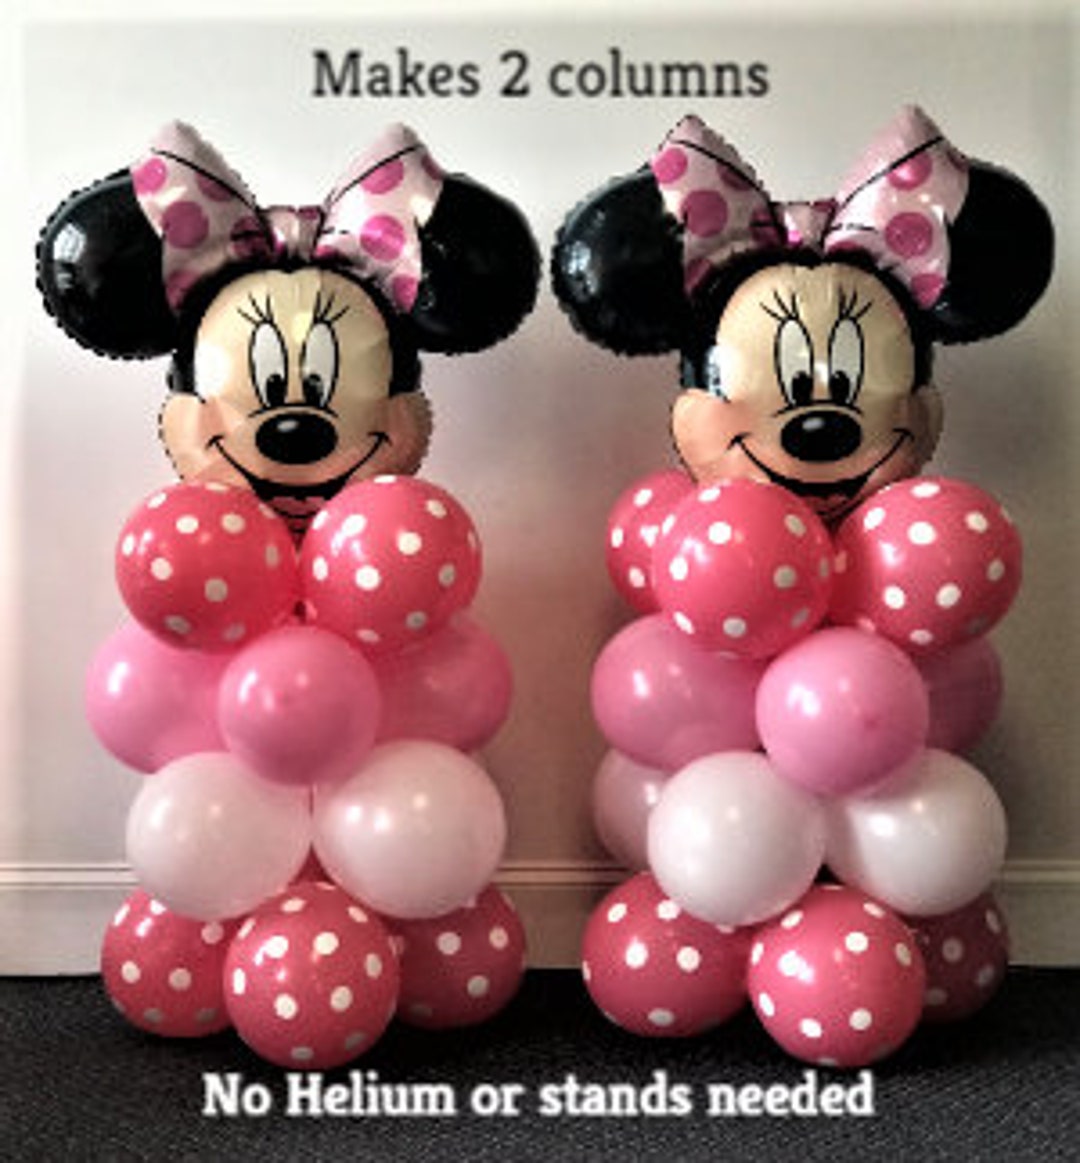 Ballons à thème Minnie Mouse 7 pièces - Anniversaire - 4 ans